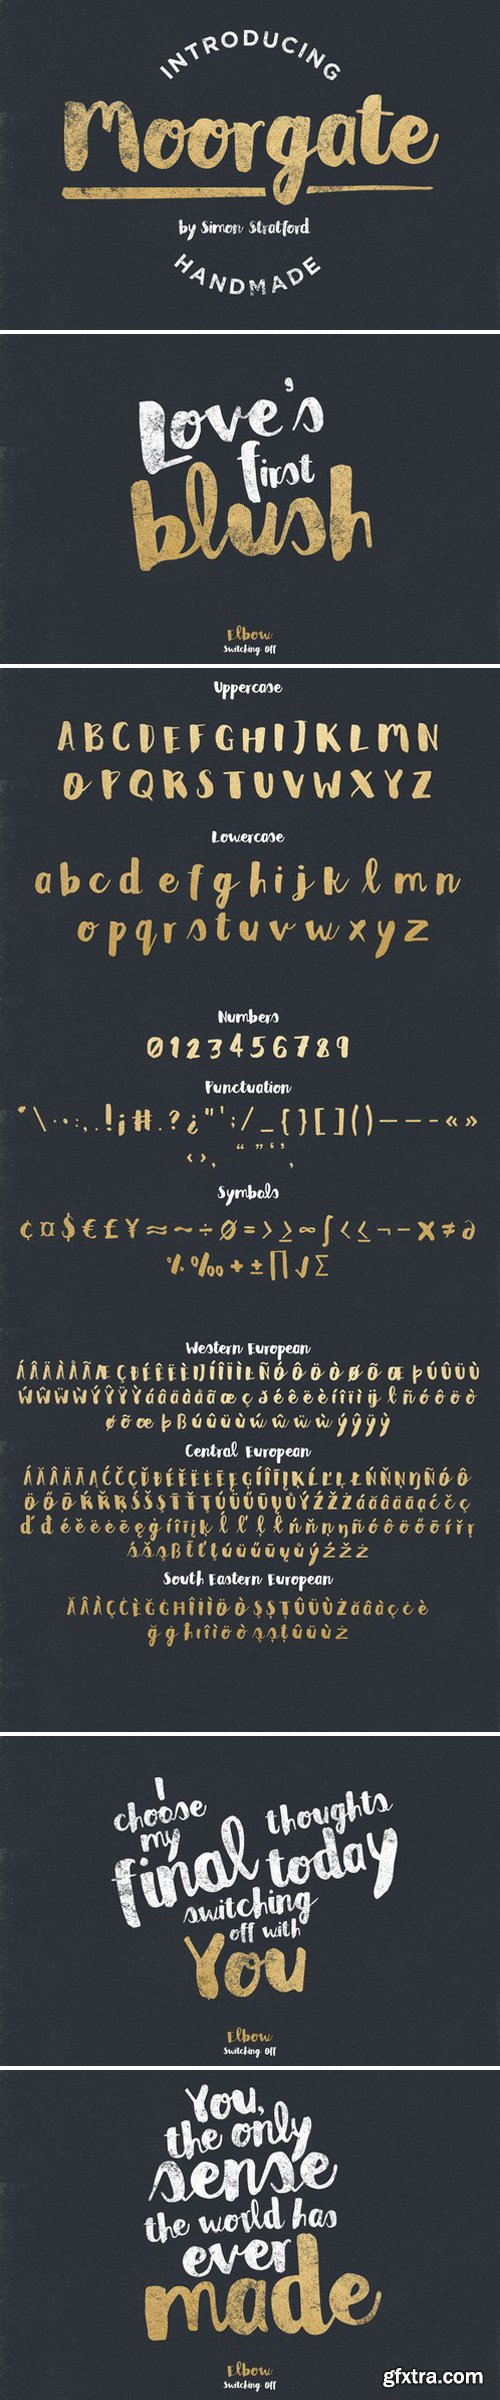 CM - Moorgate brush script typeface 283046